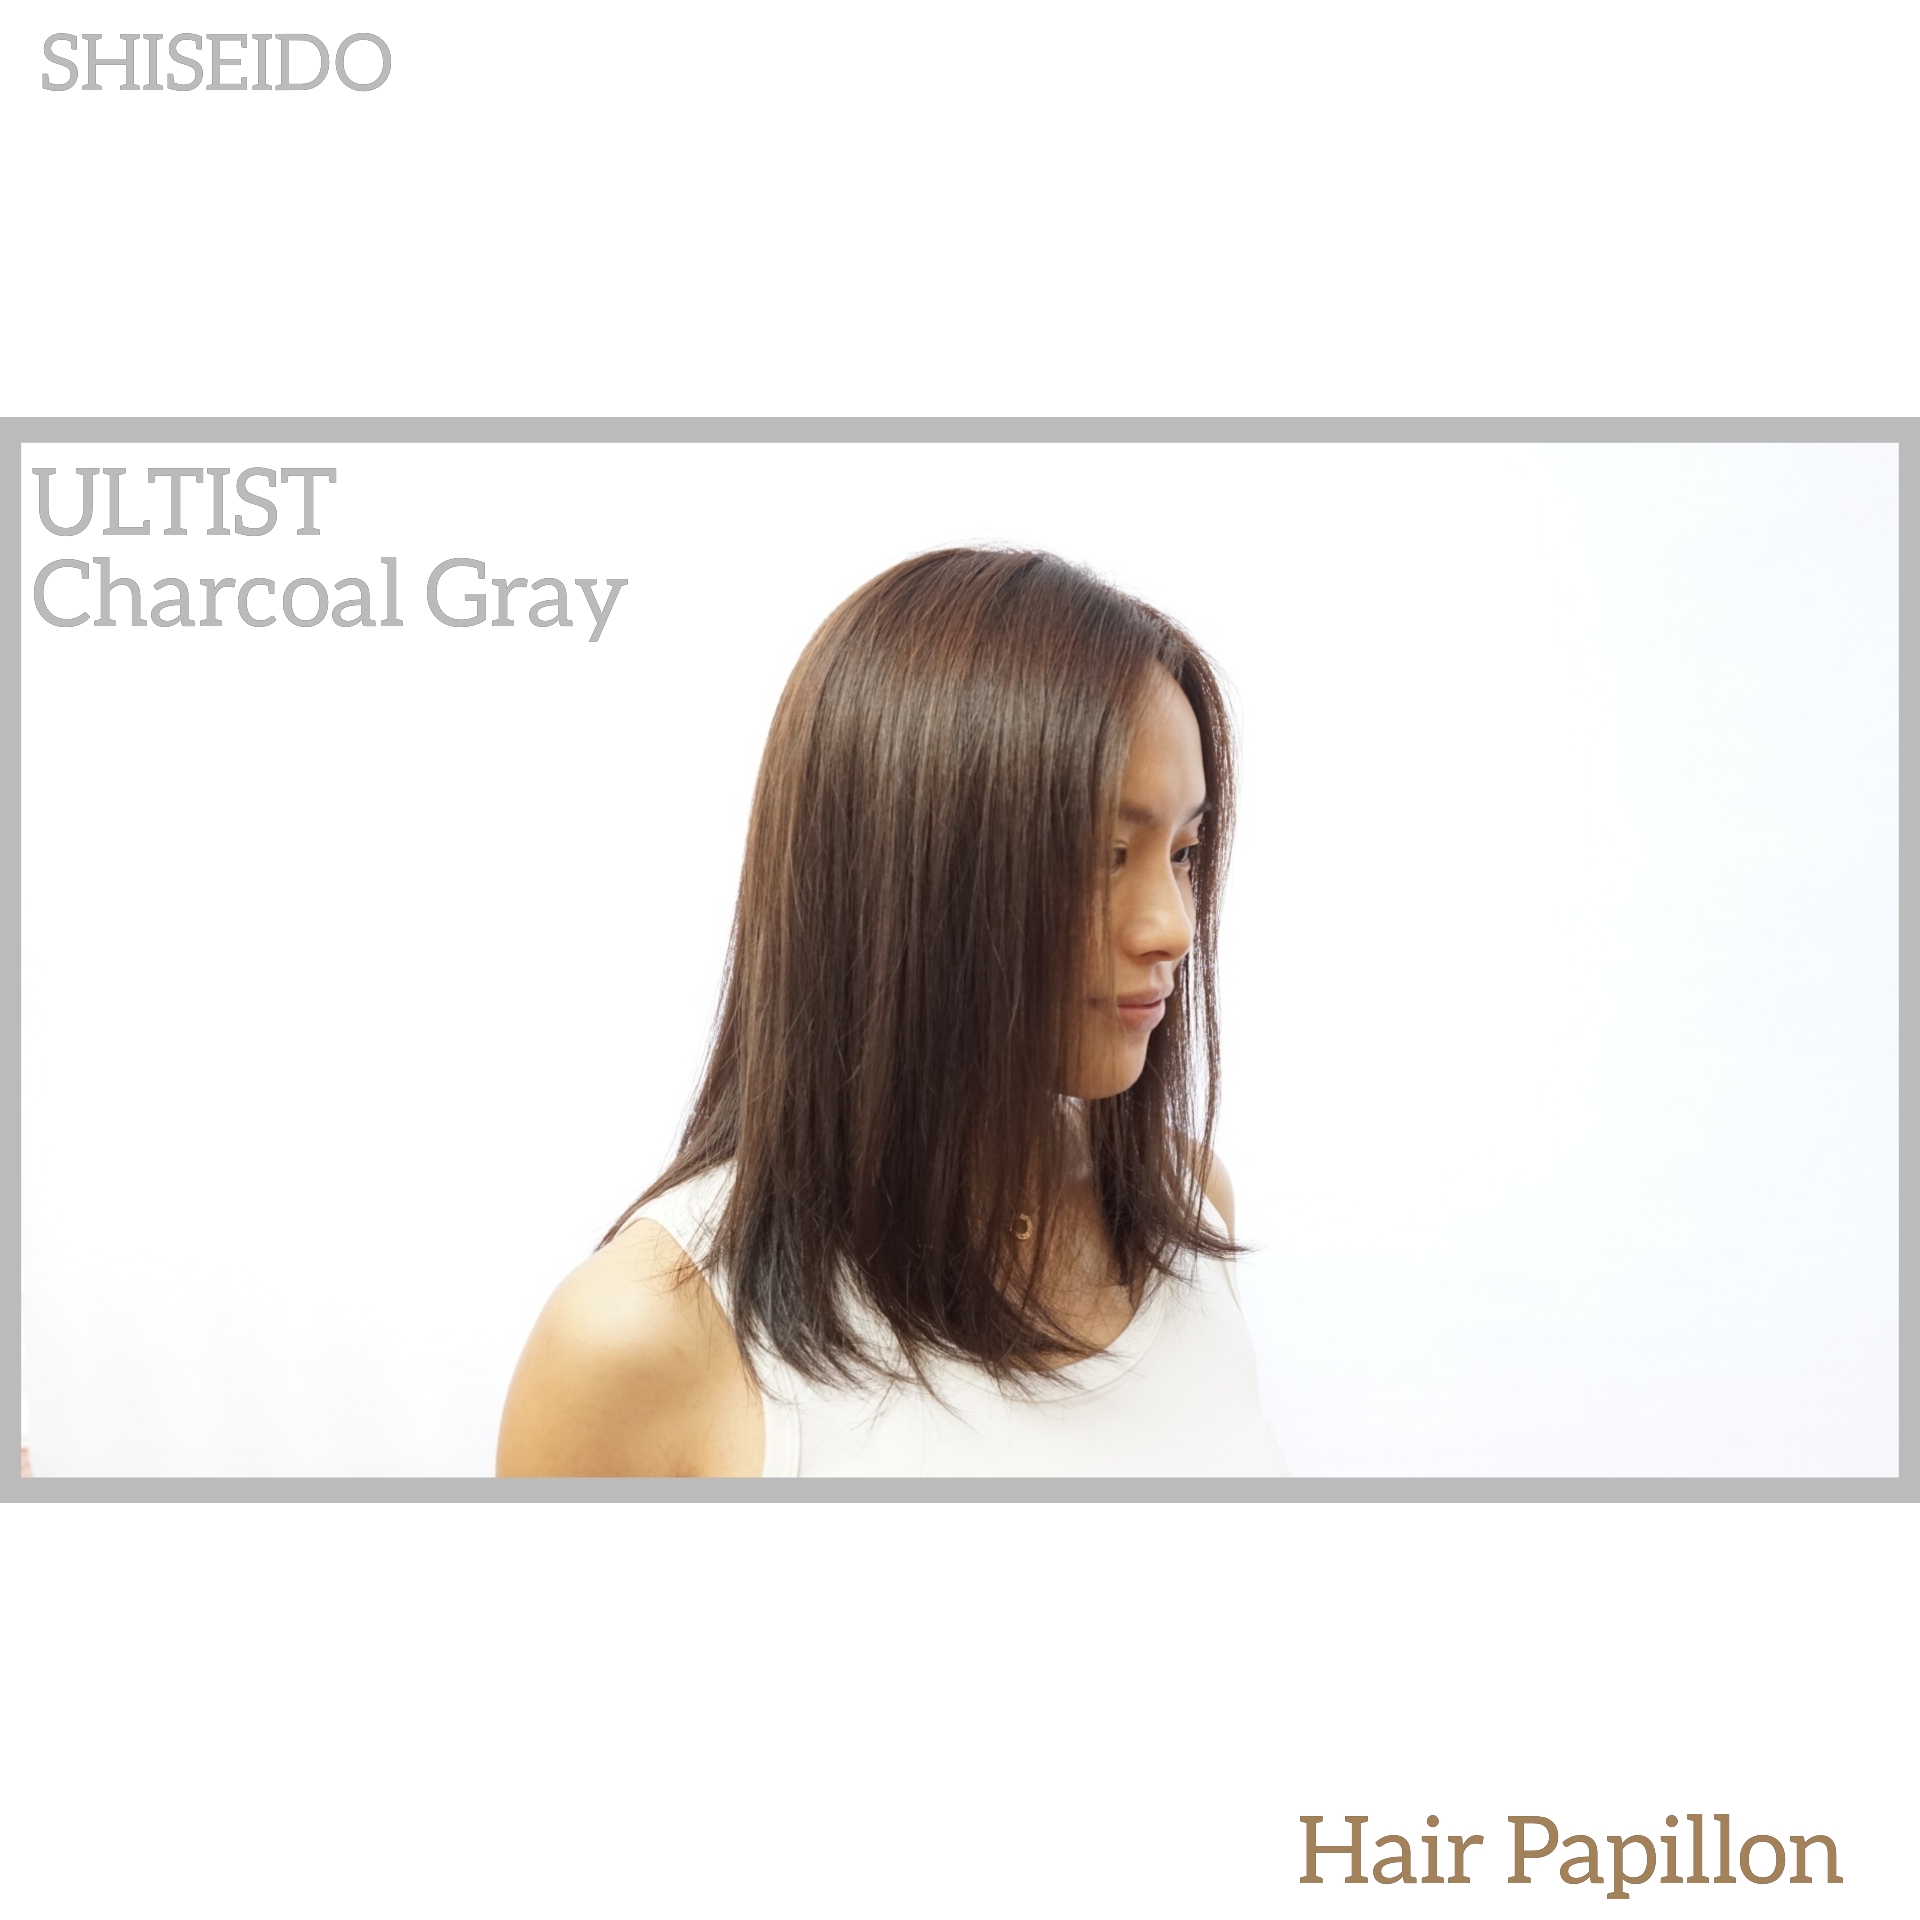 作品参考 / 最新消息:shiseido color CG